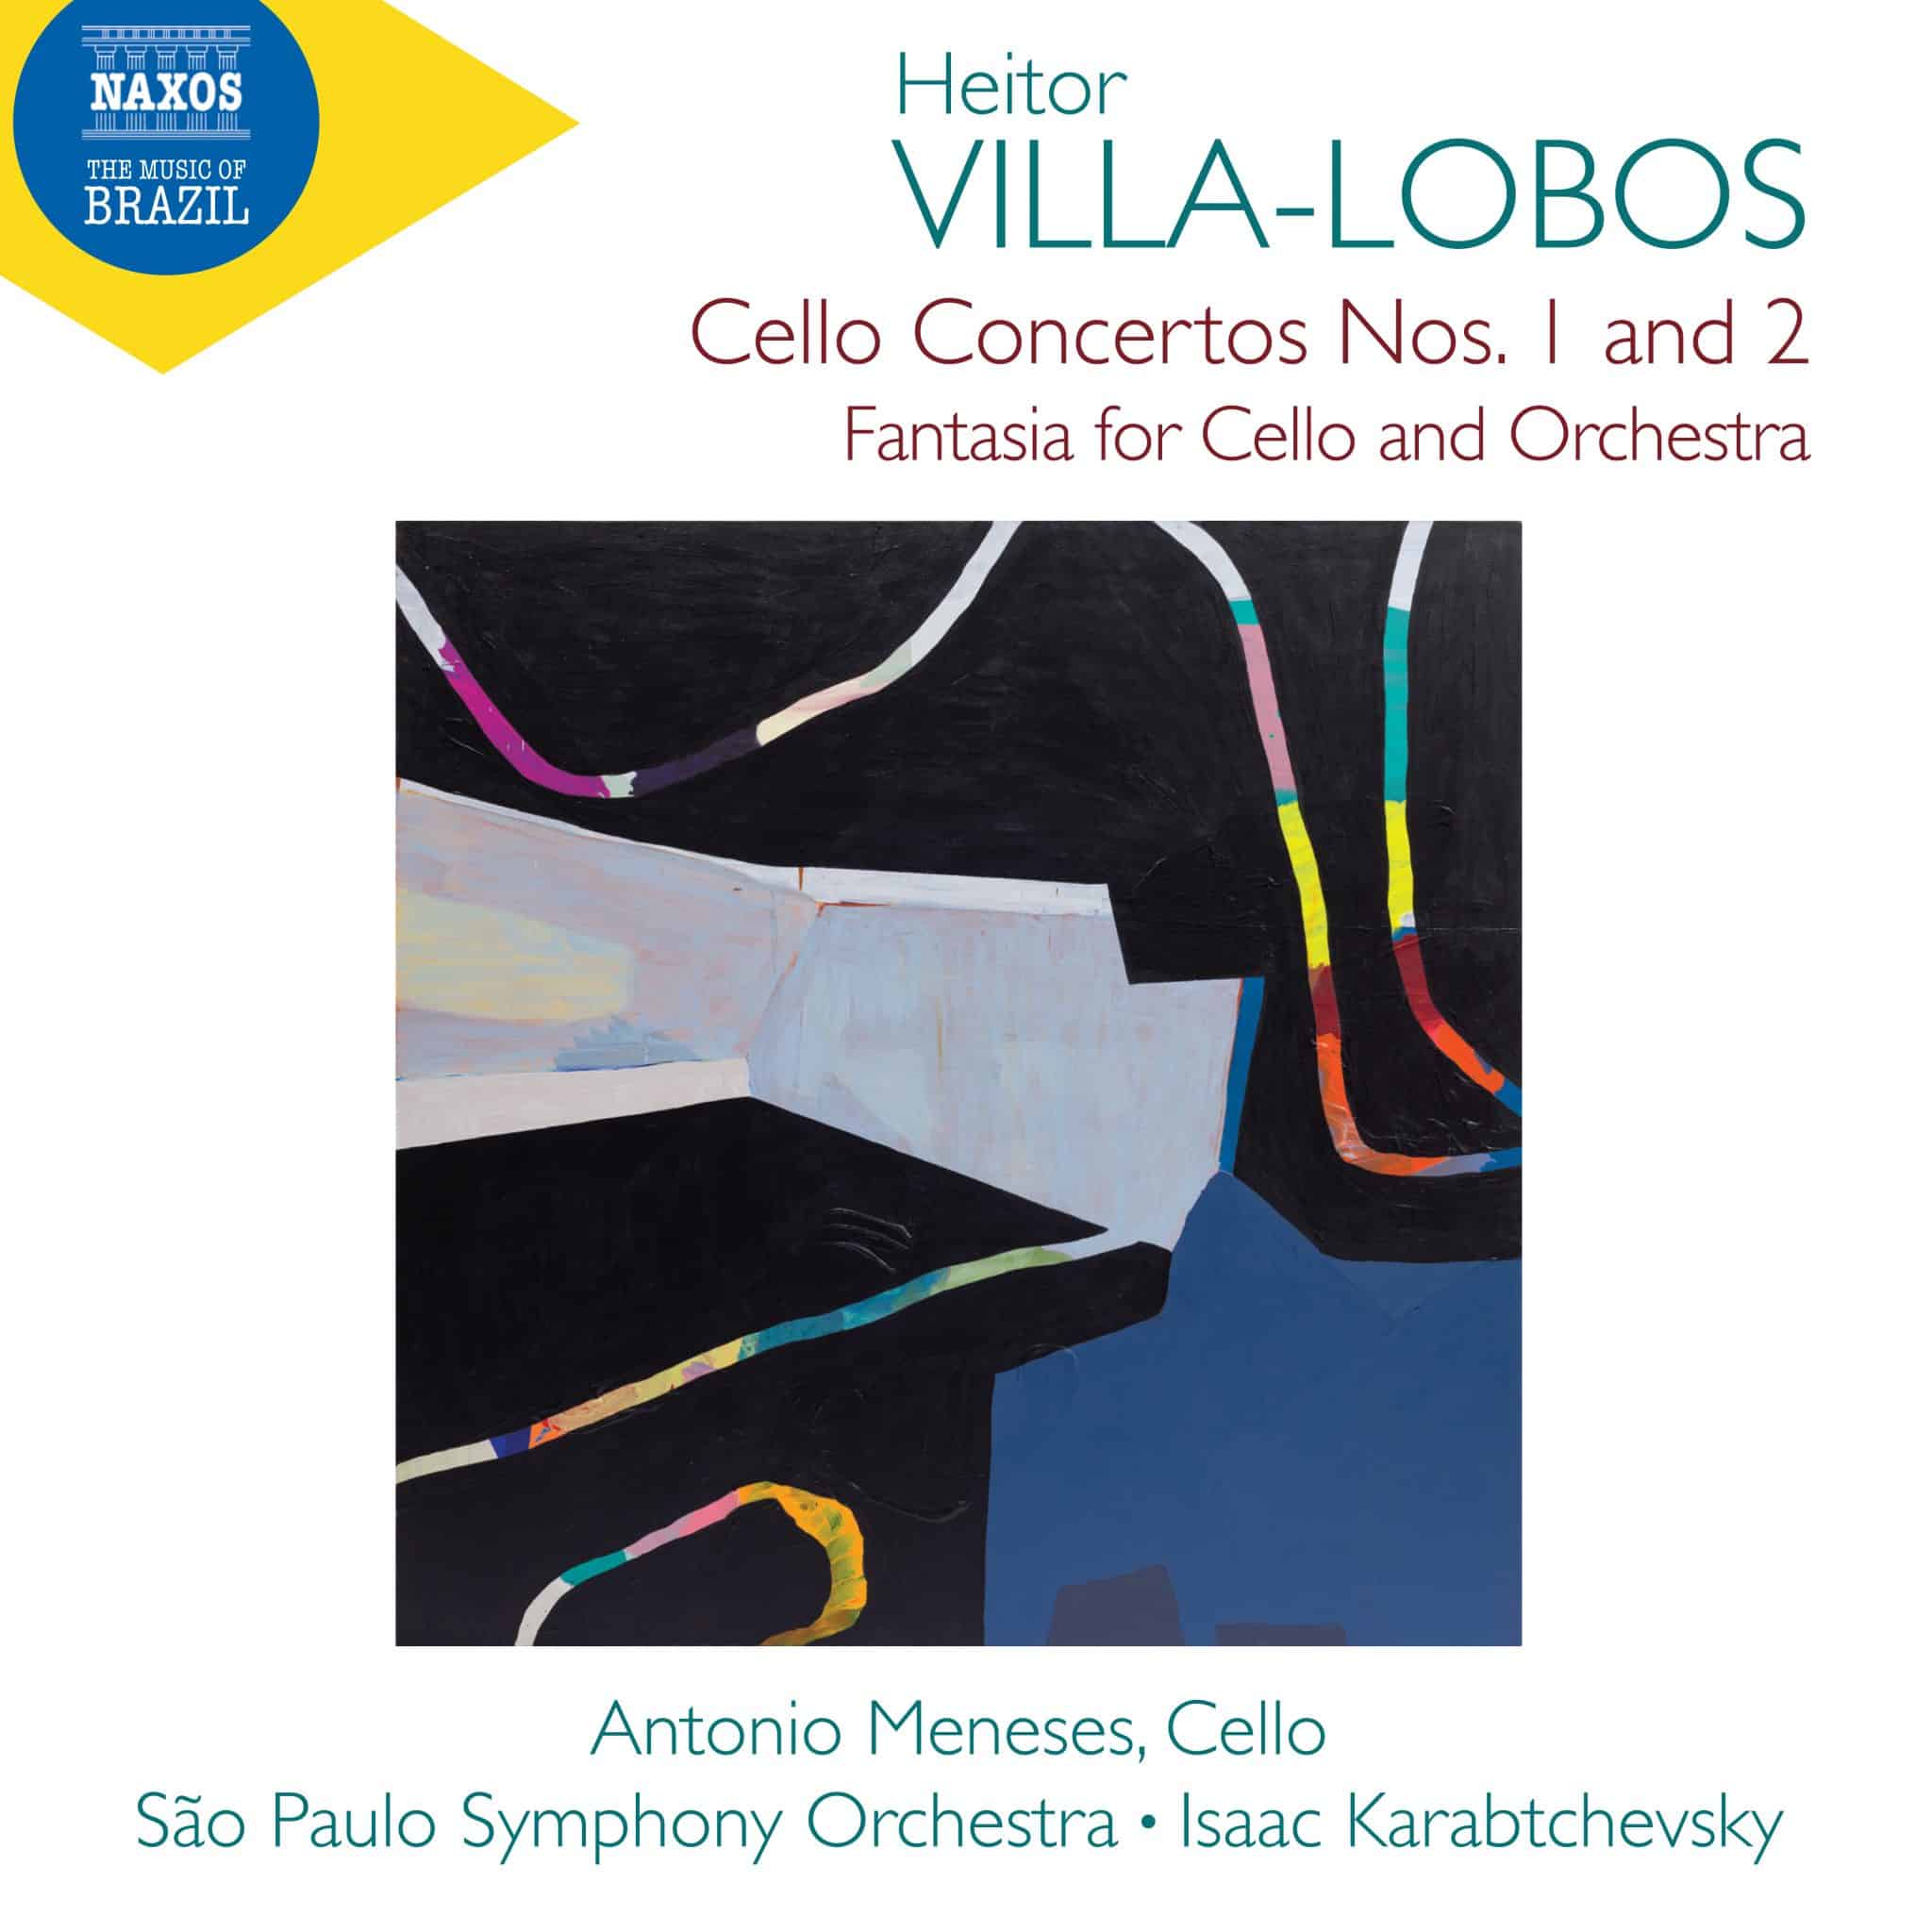 revistaprosaversoearte.com - Novo álbum da série 'A Música do Brasil' com Osesp e Antonio Meneses | Villa-Lobos